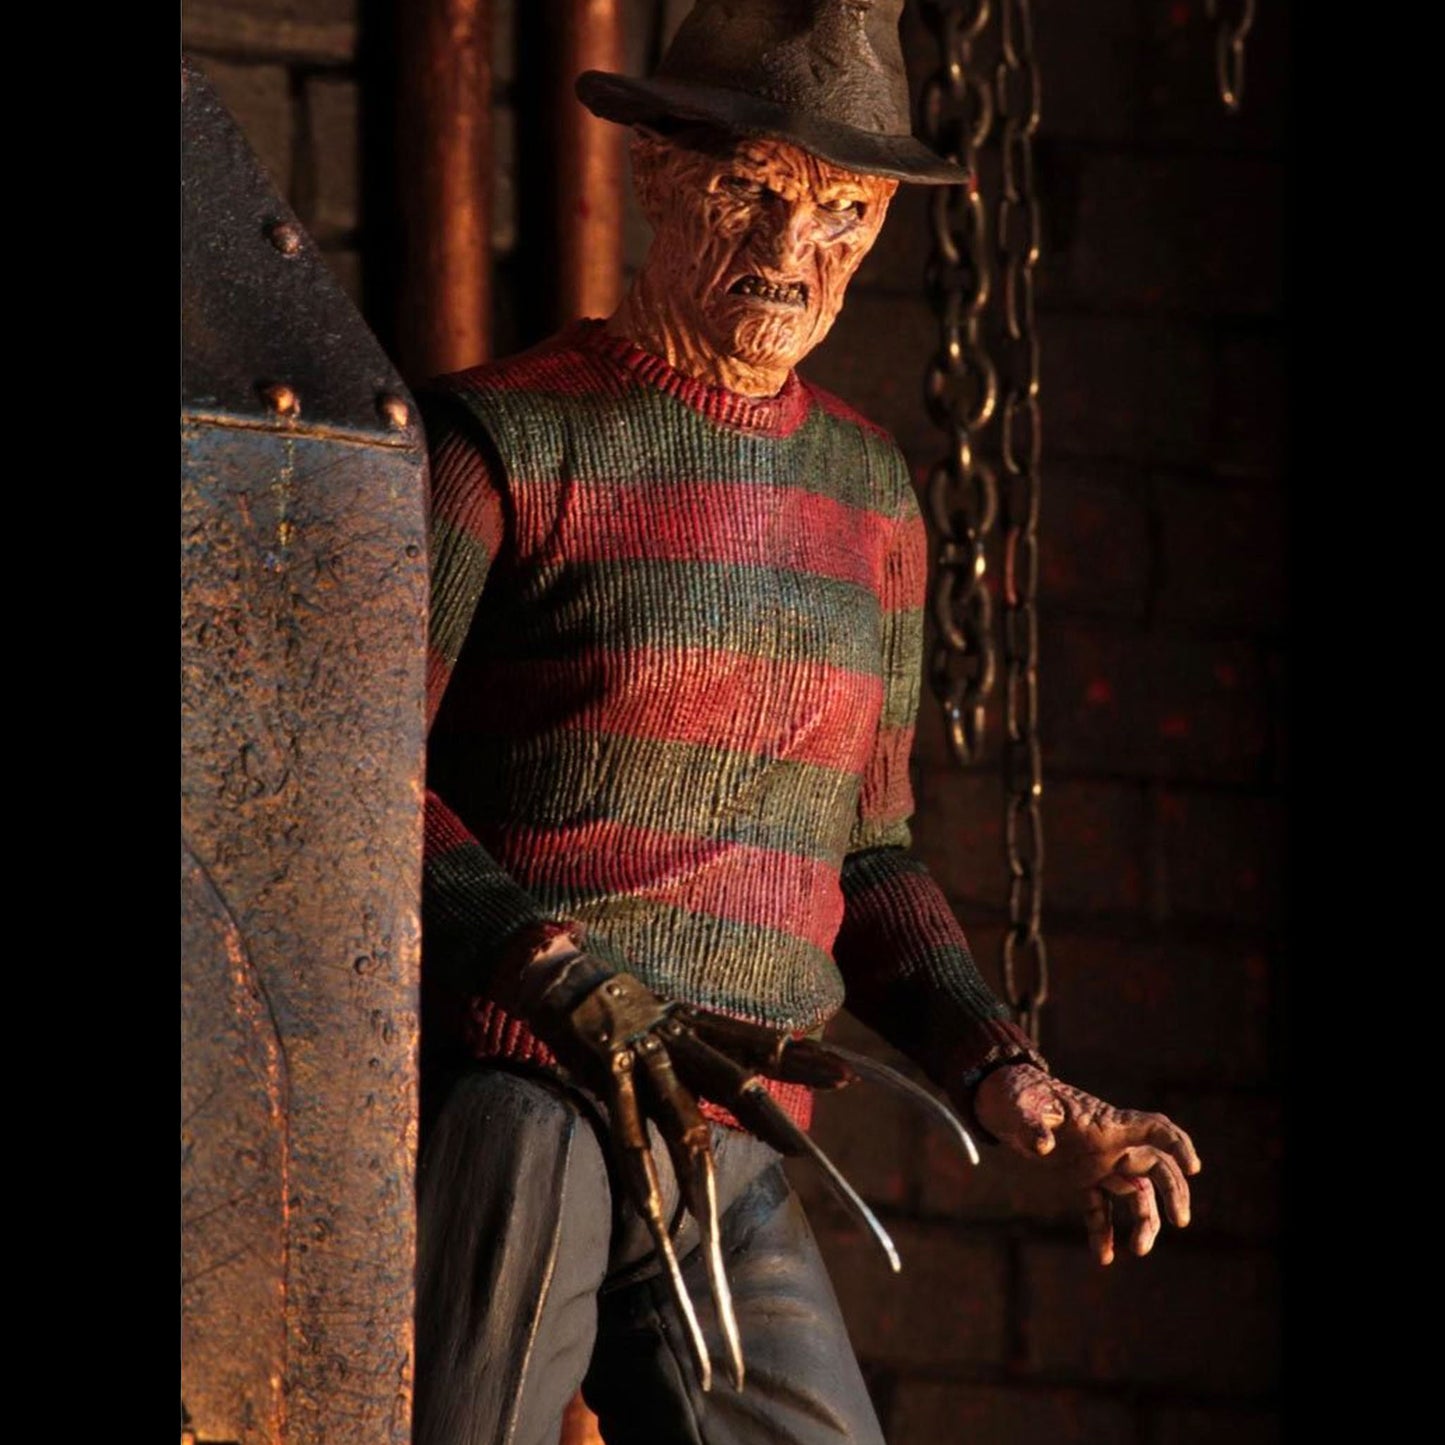 NECA Nightmare on Elm Street 2 Freddy's Revenge Freddy Kreuger